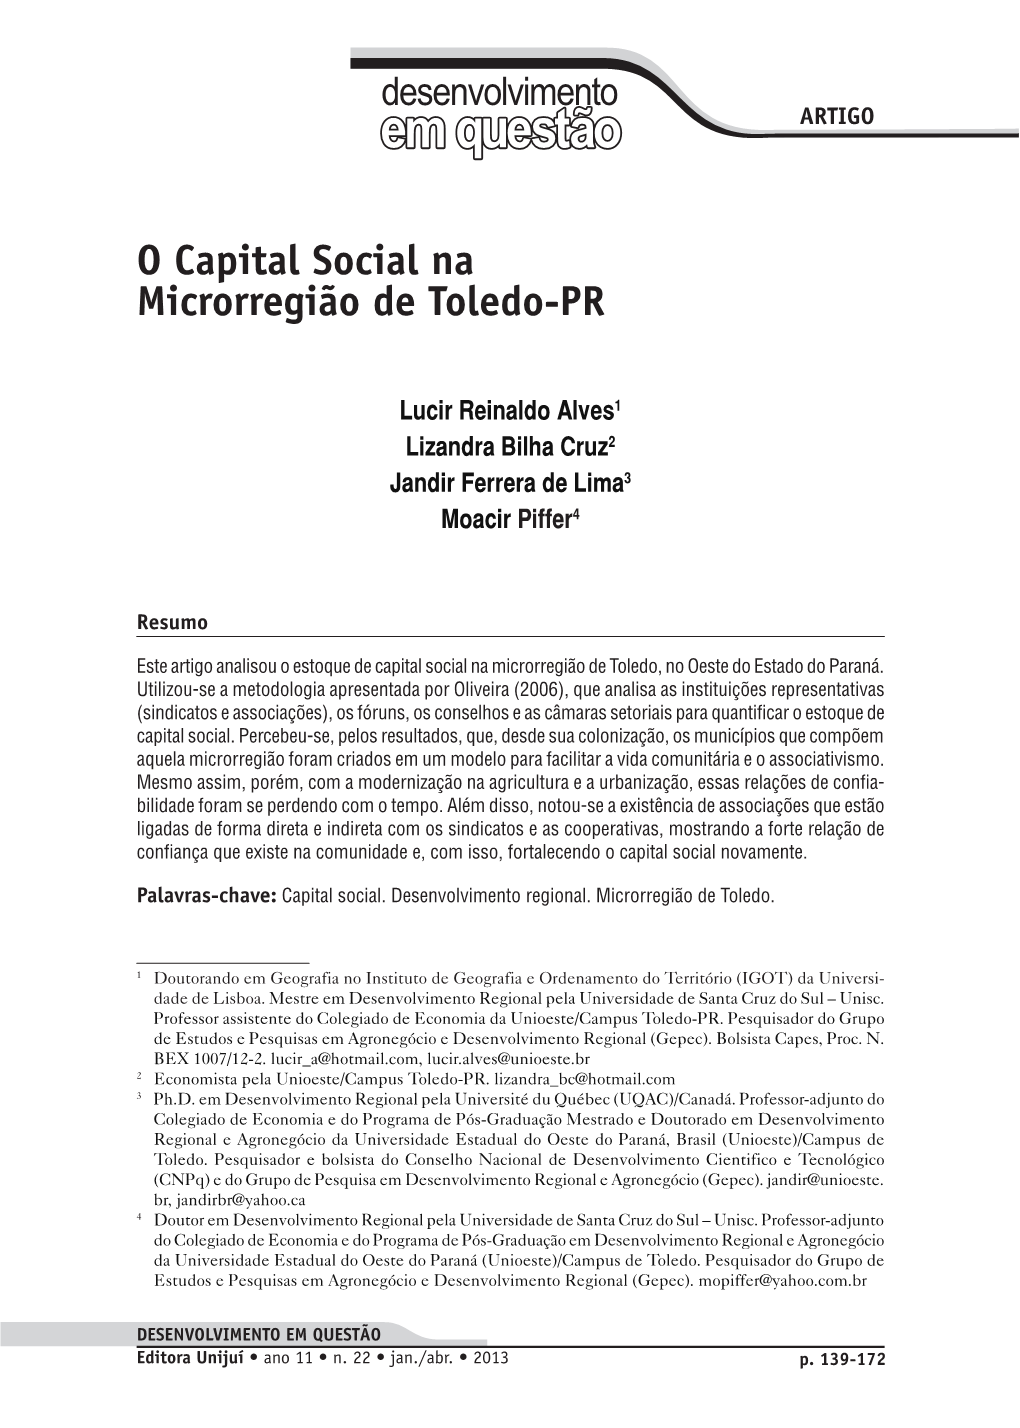 O Capital Social Na Microrregião De Toledo-Pr